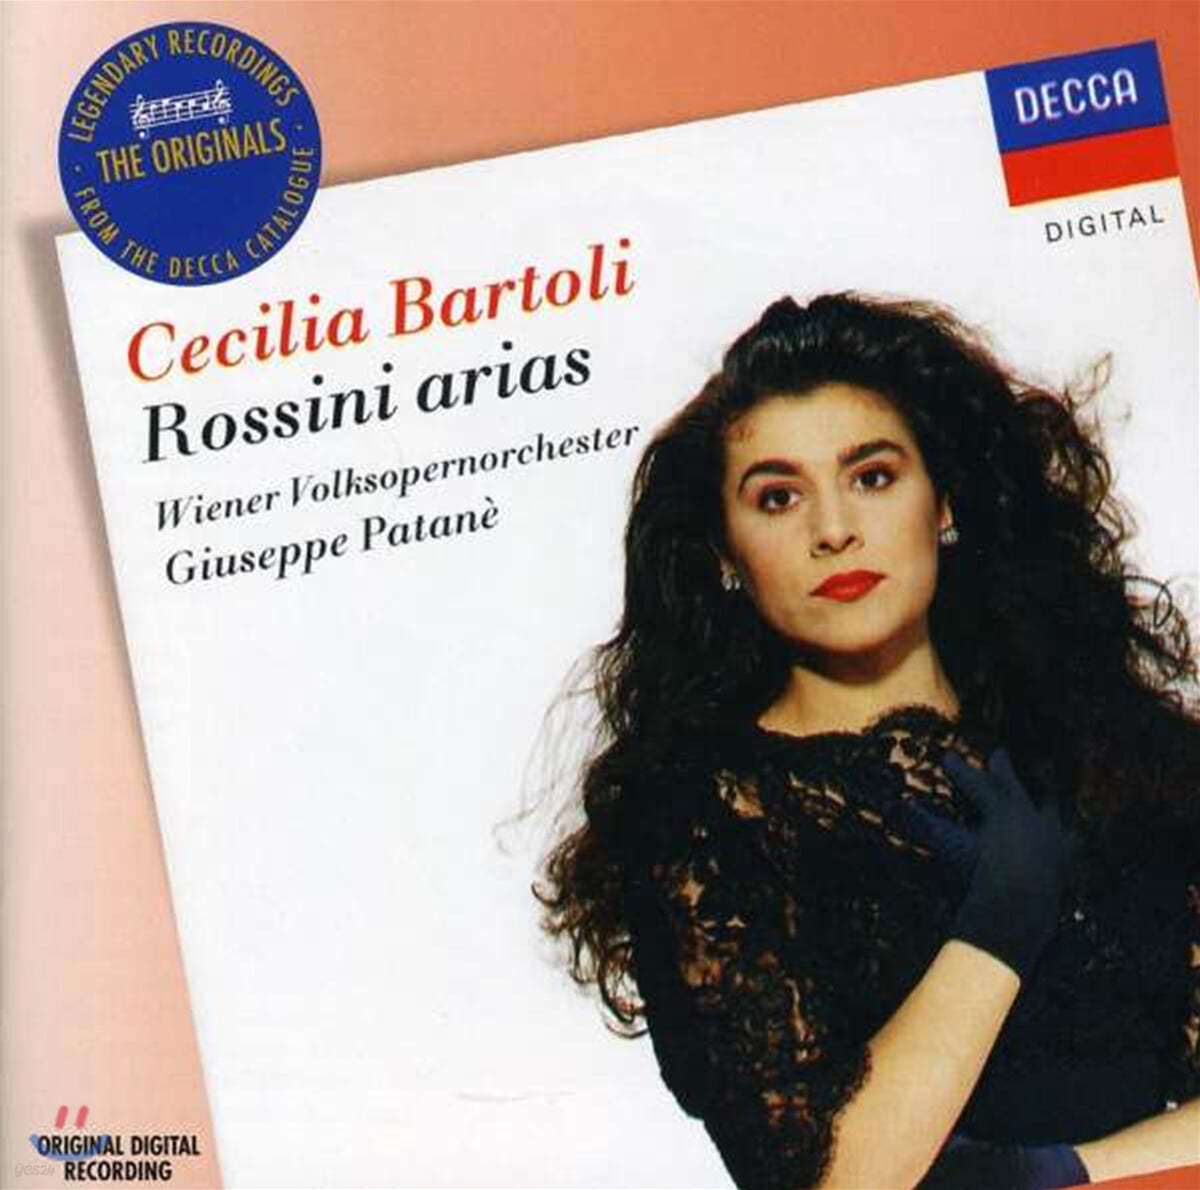 체칠리아 바르톨리가 부르는 로시니 아리아집 (Cecilia Bartoli sings Rossini Arias)